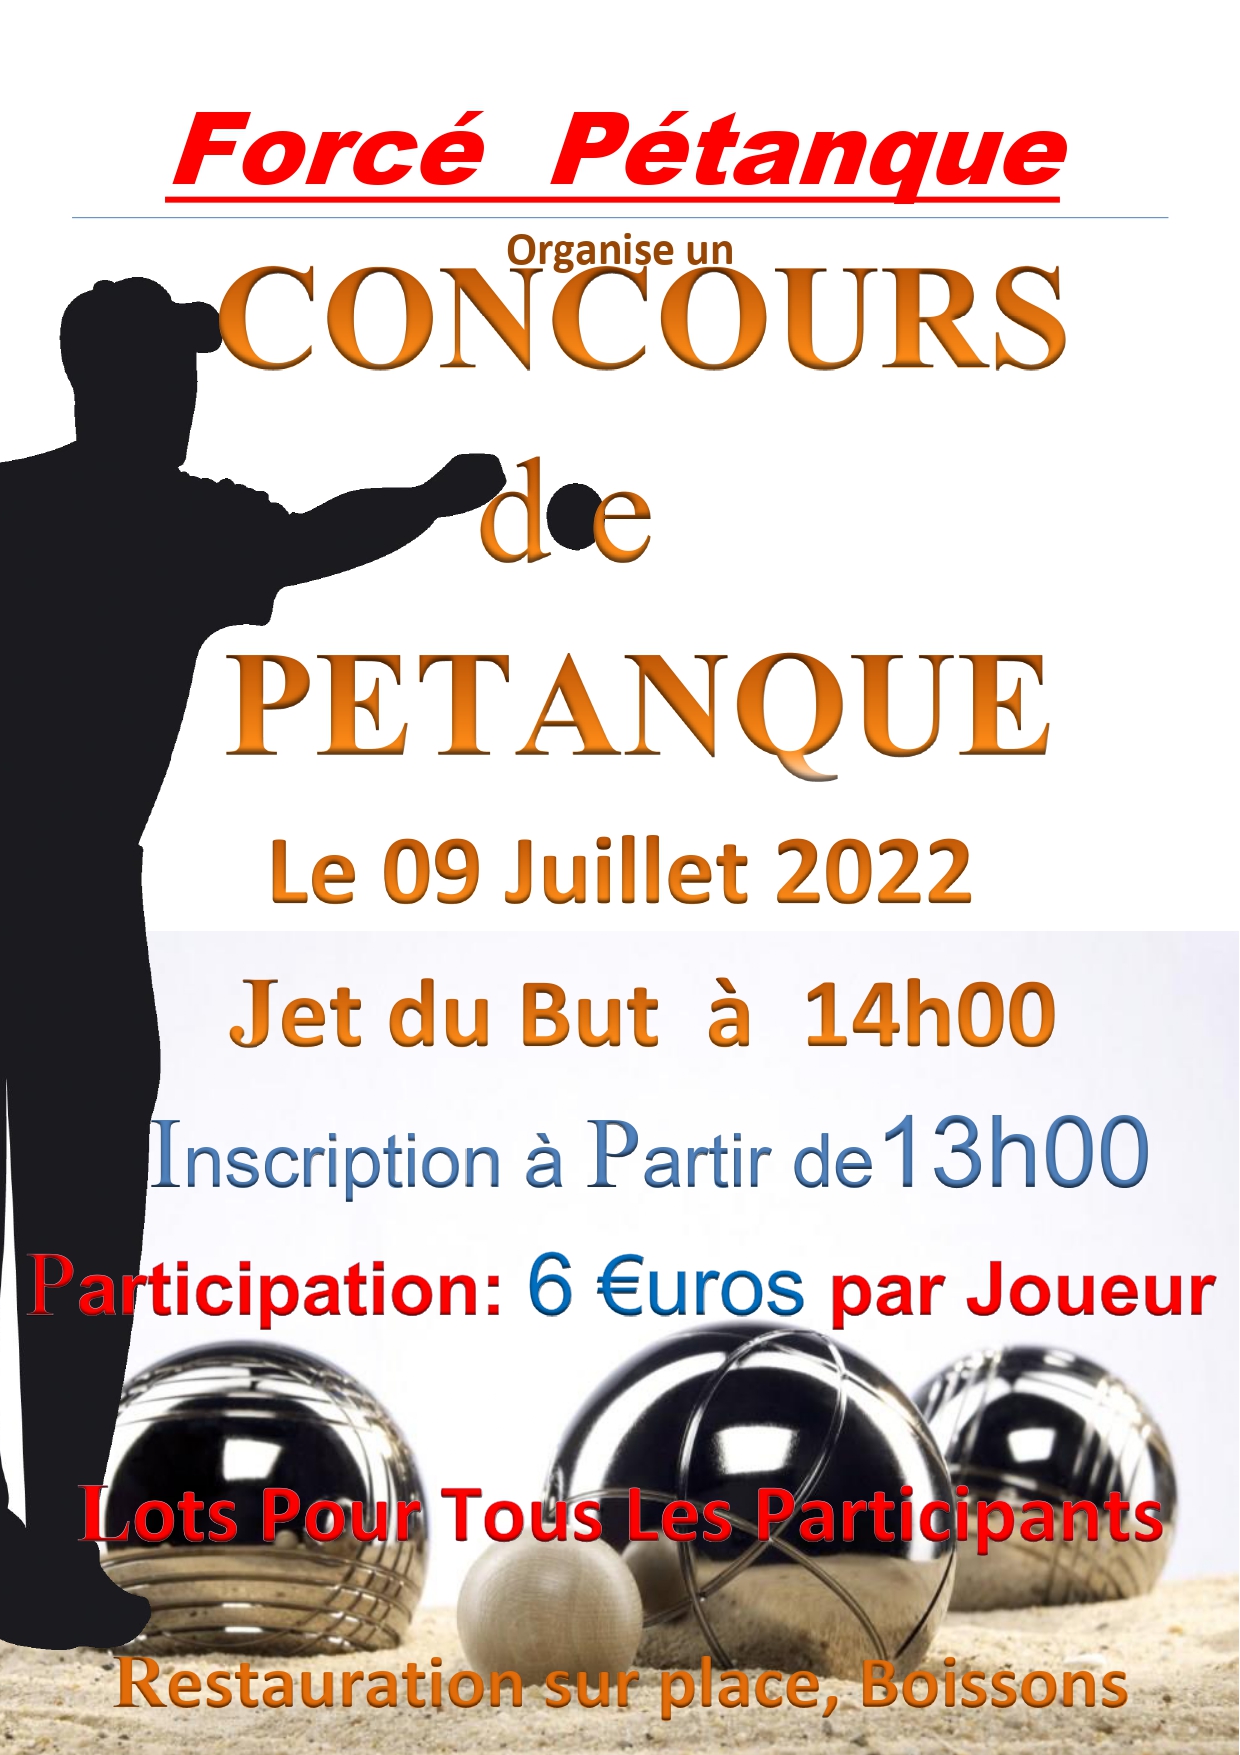 2022 04 25 Affiche Concoure Pétanque du 09 07 2022(1)_page-0001